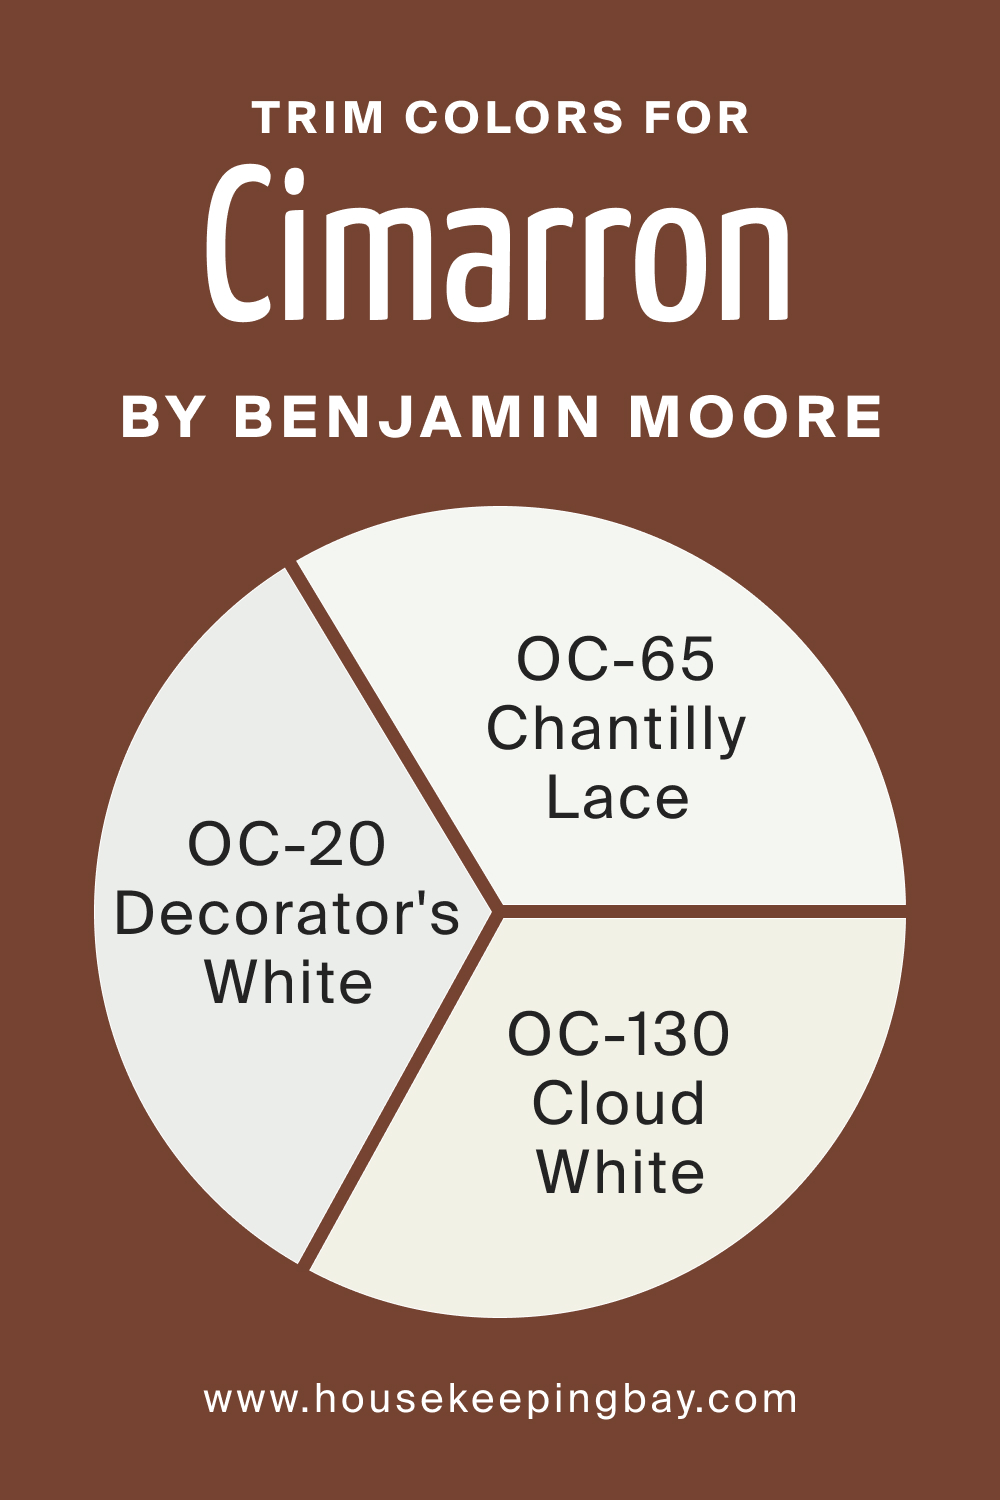 Trim Colors of BM Cimarron 2093-10